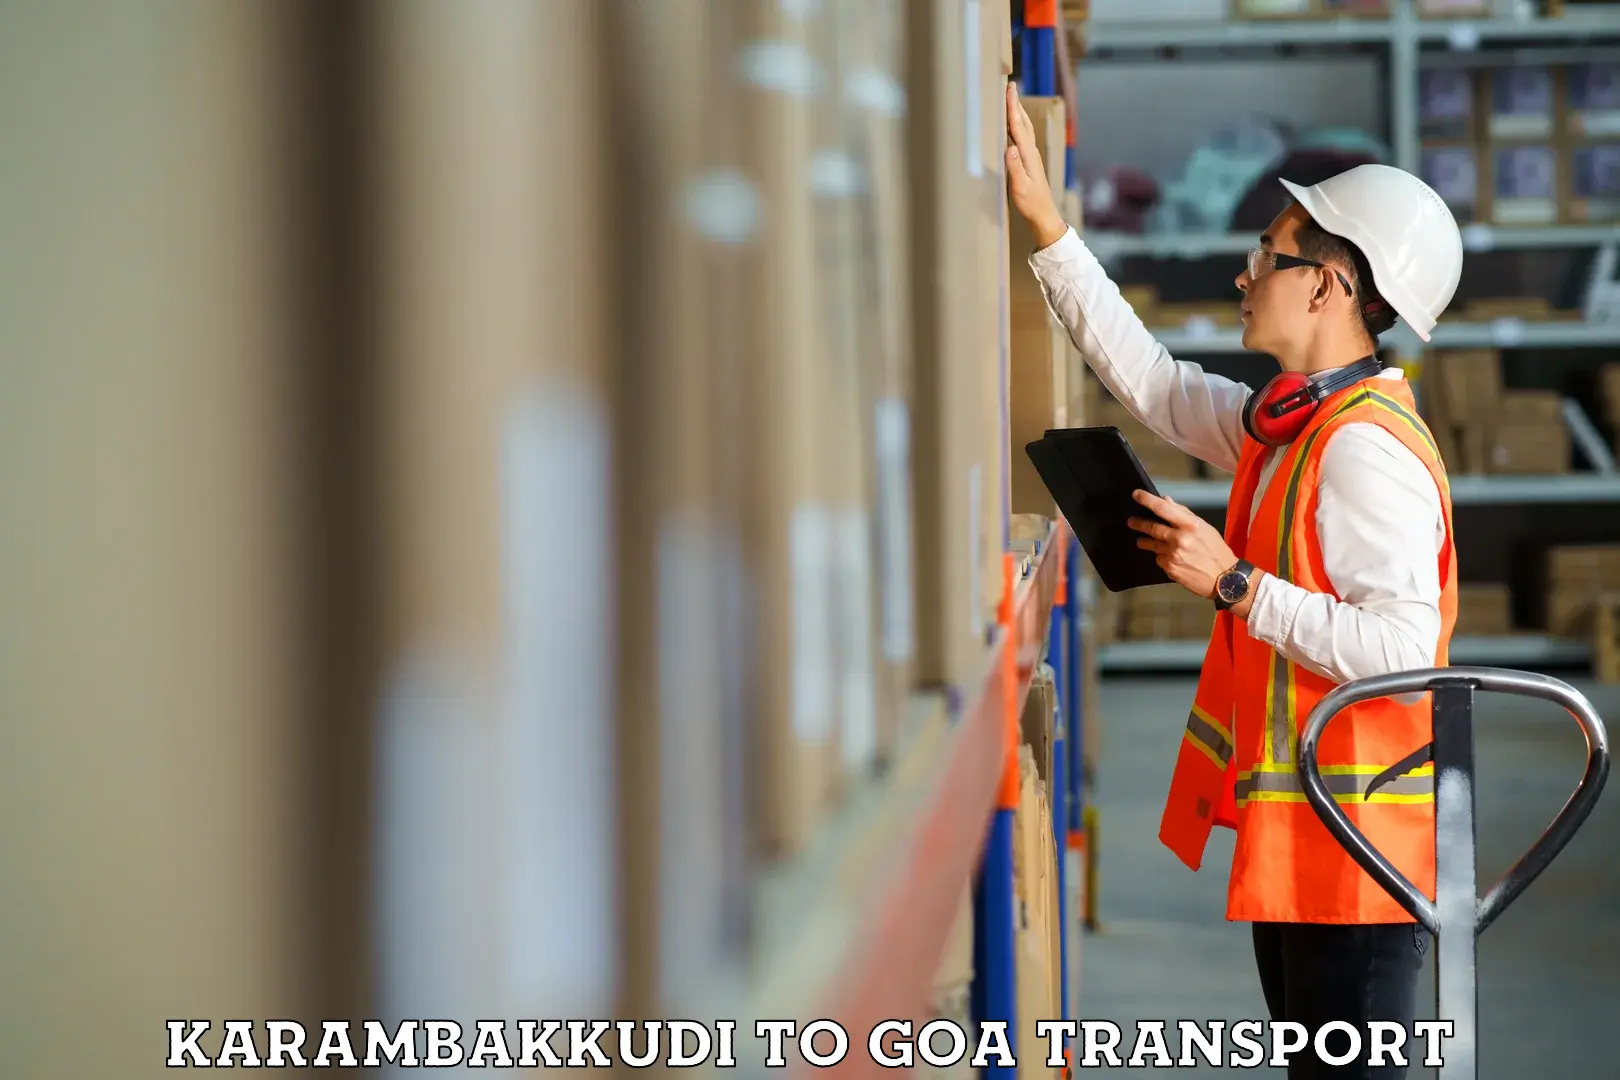 Transport services Karambakkudi to South Goa